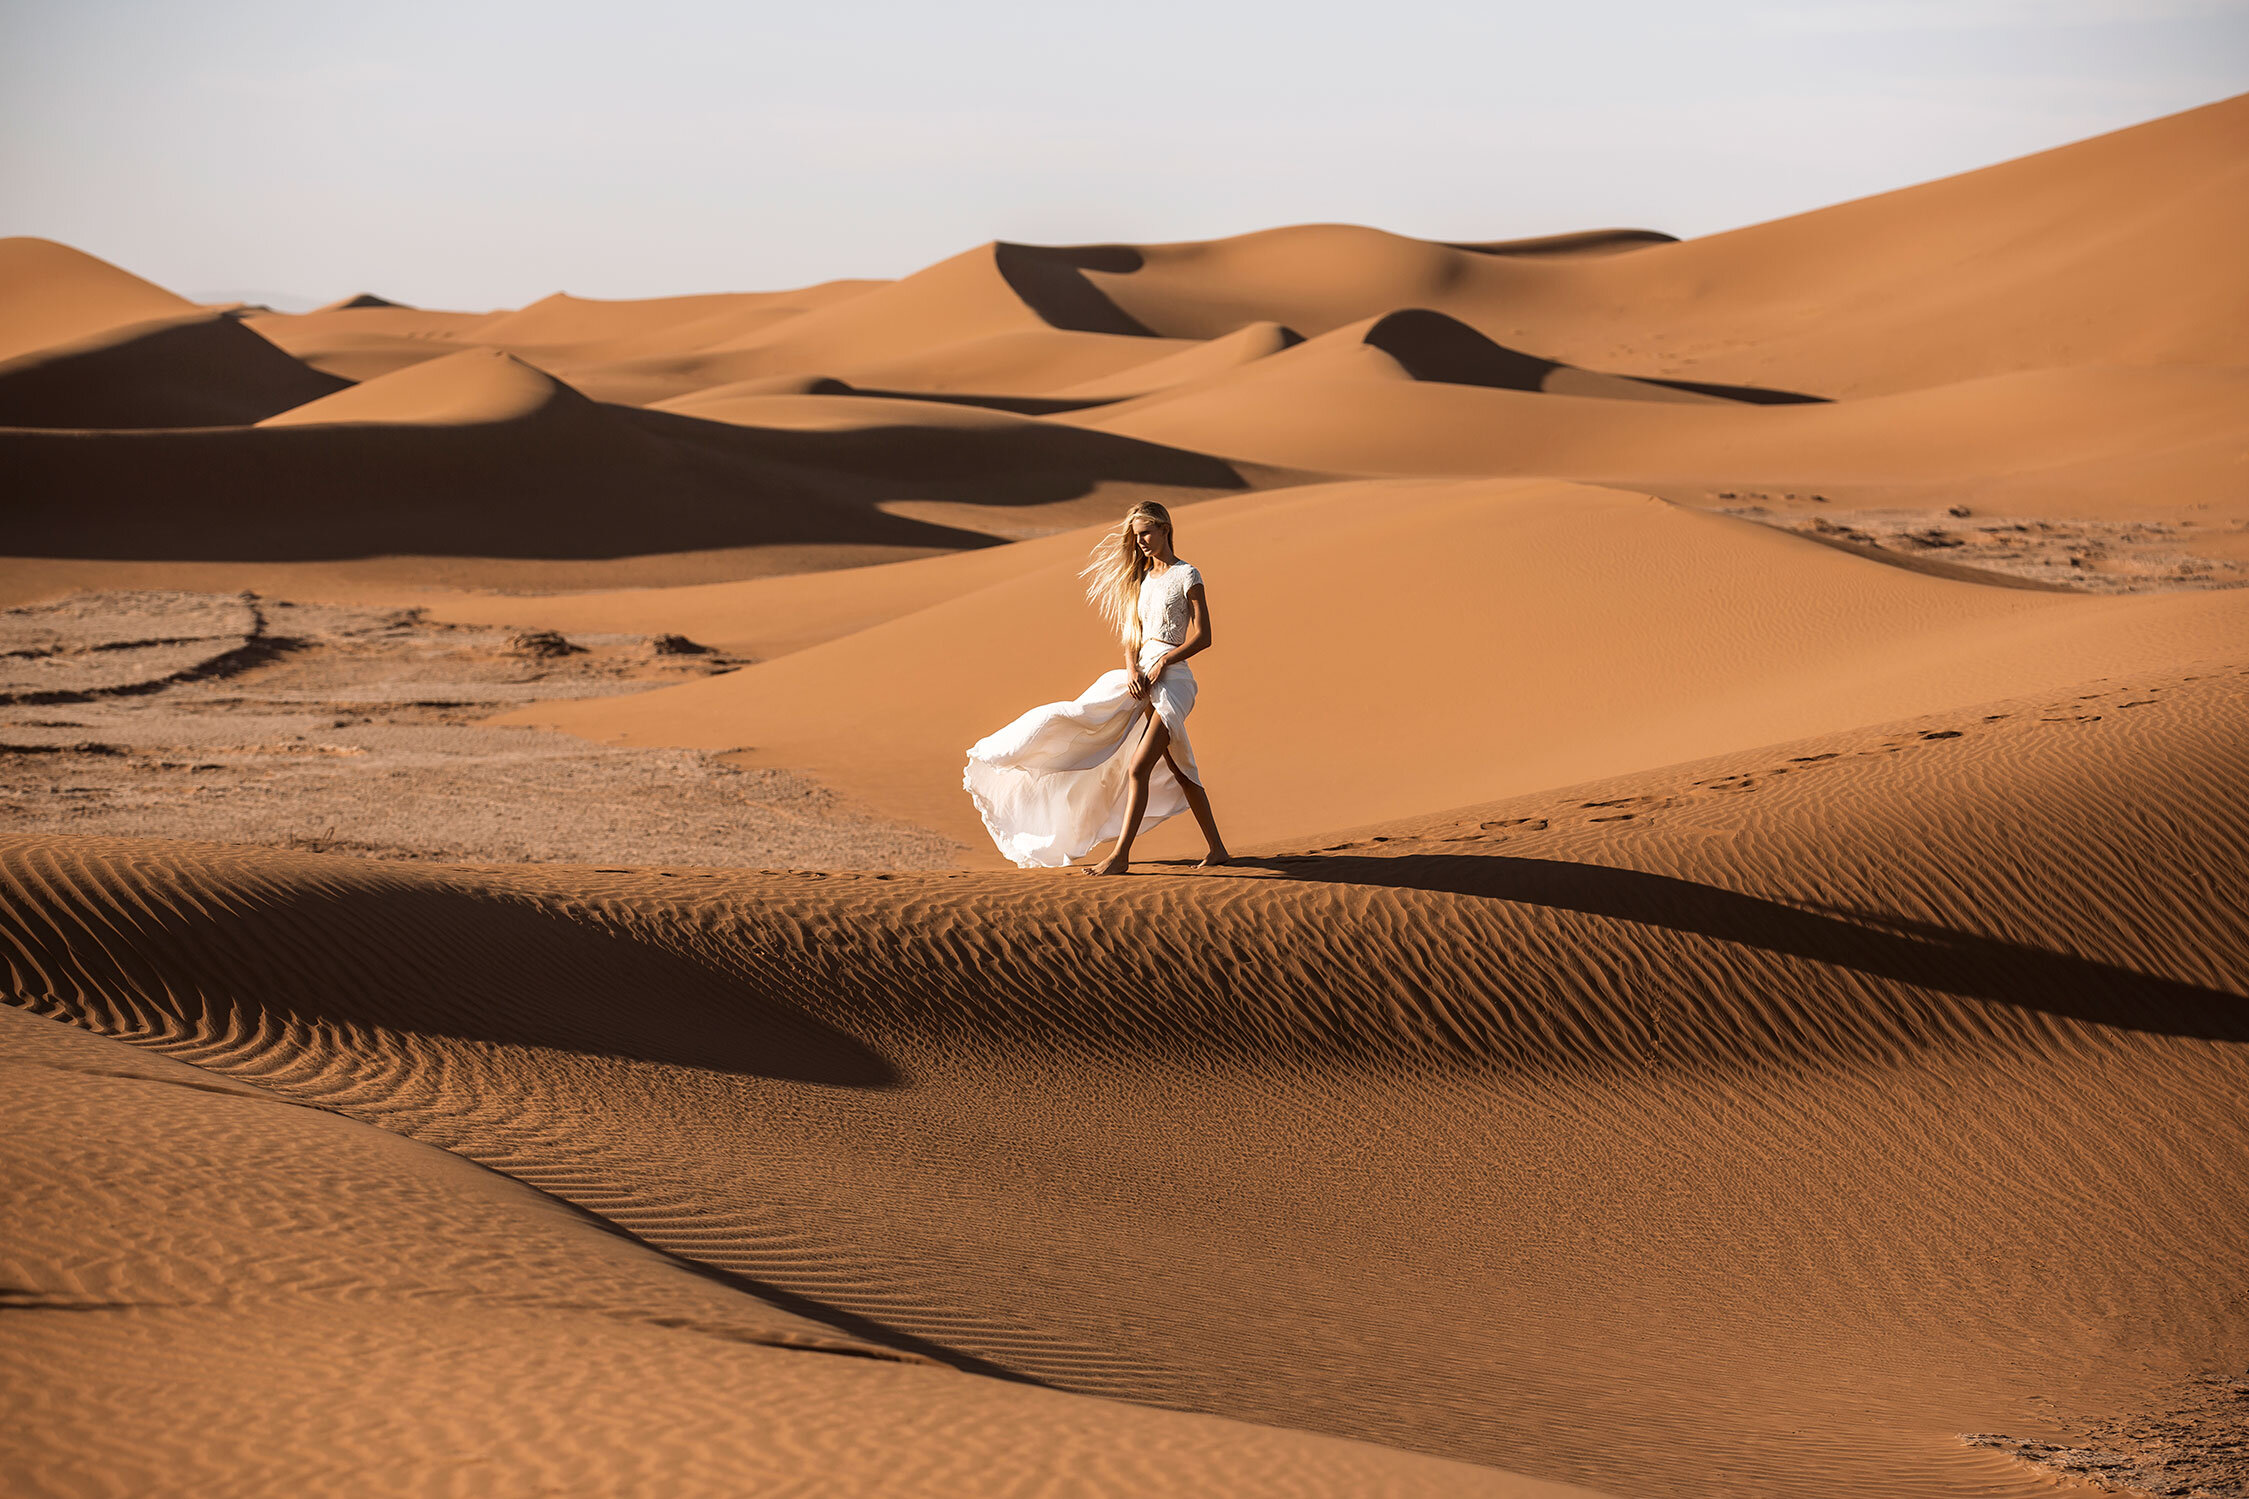   THE LANE   SAHARA DESERT 